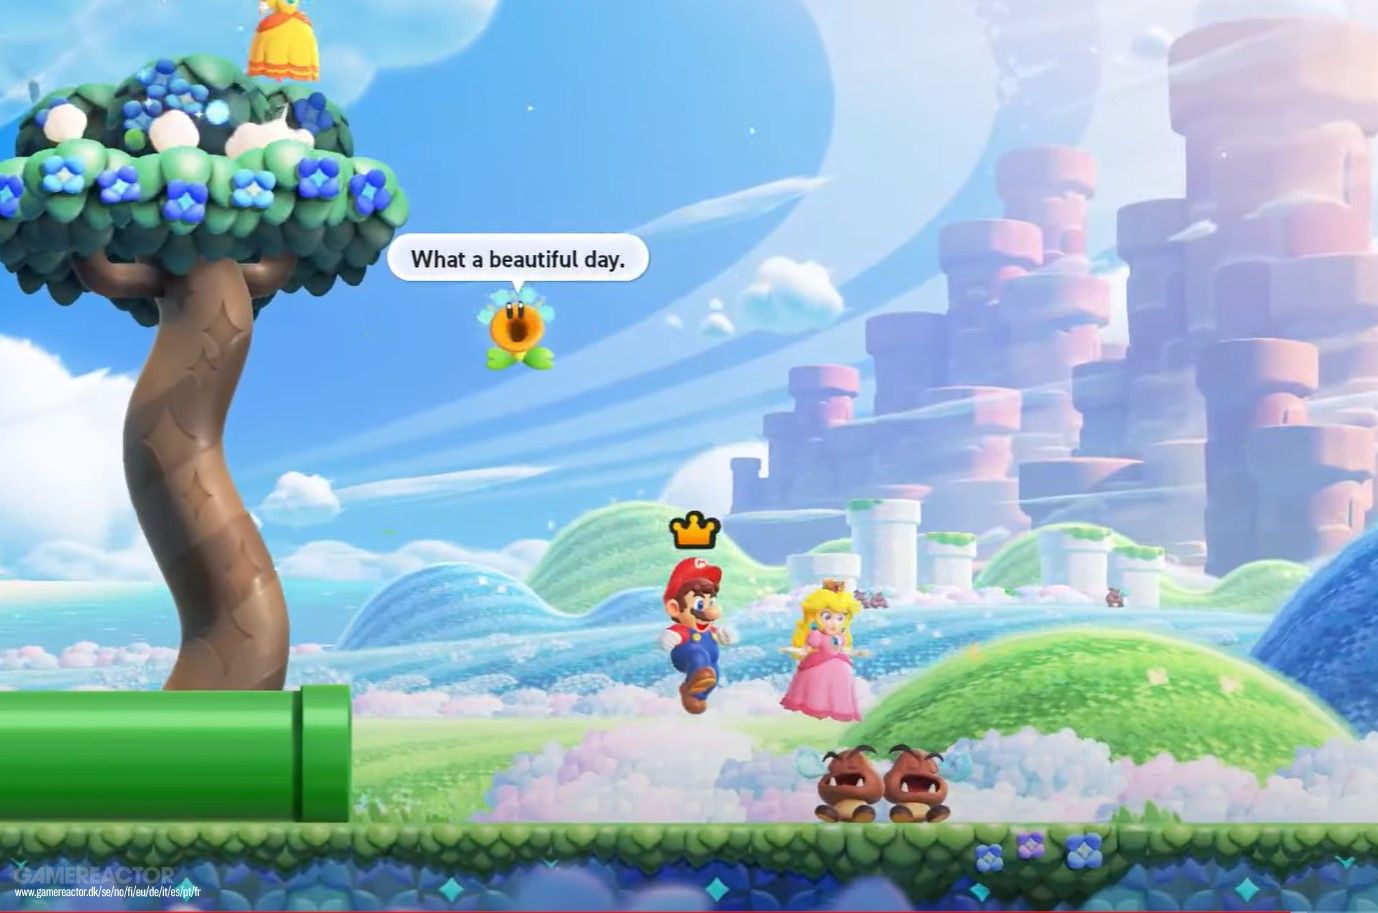 Nintendo revela tamanho de Super Mario Bros. Wonder e outros jogos